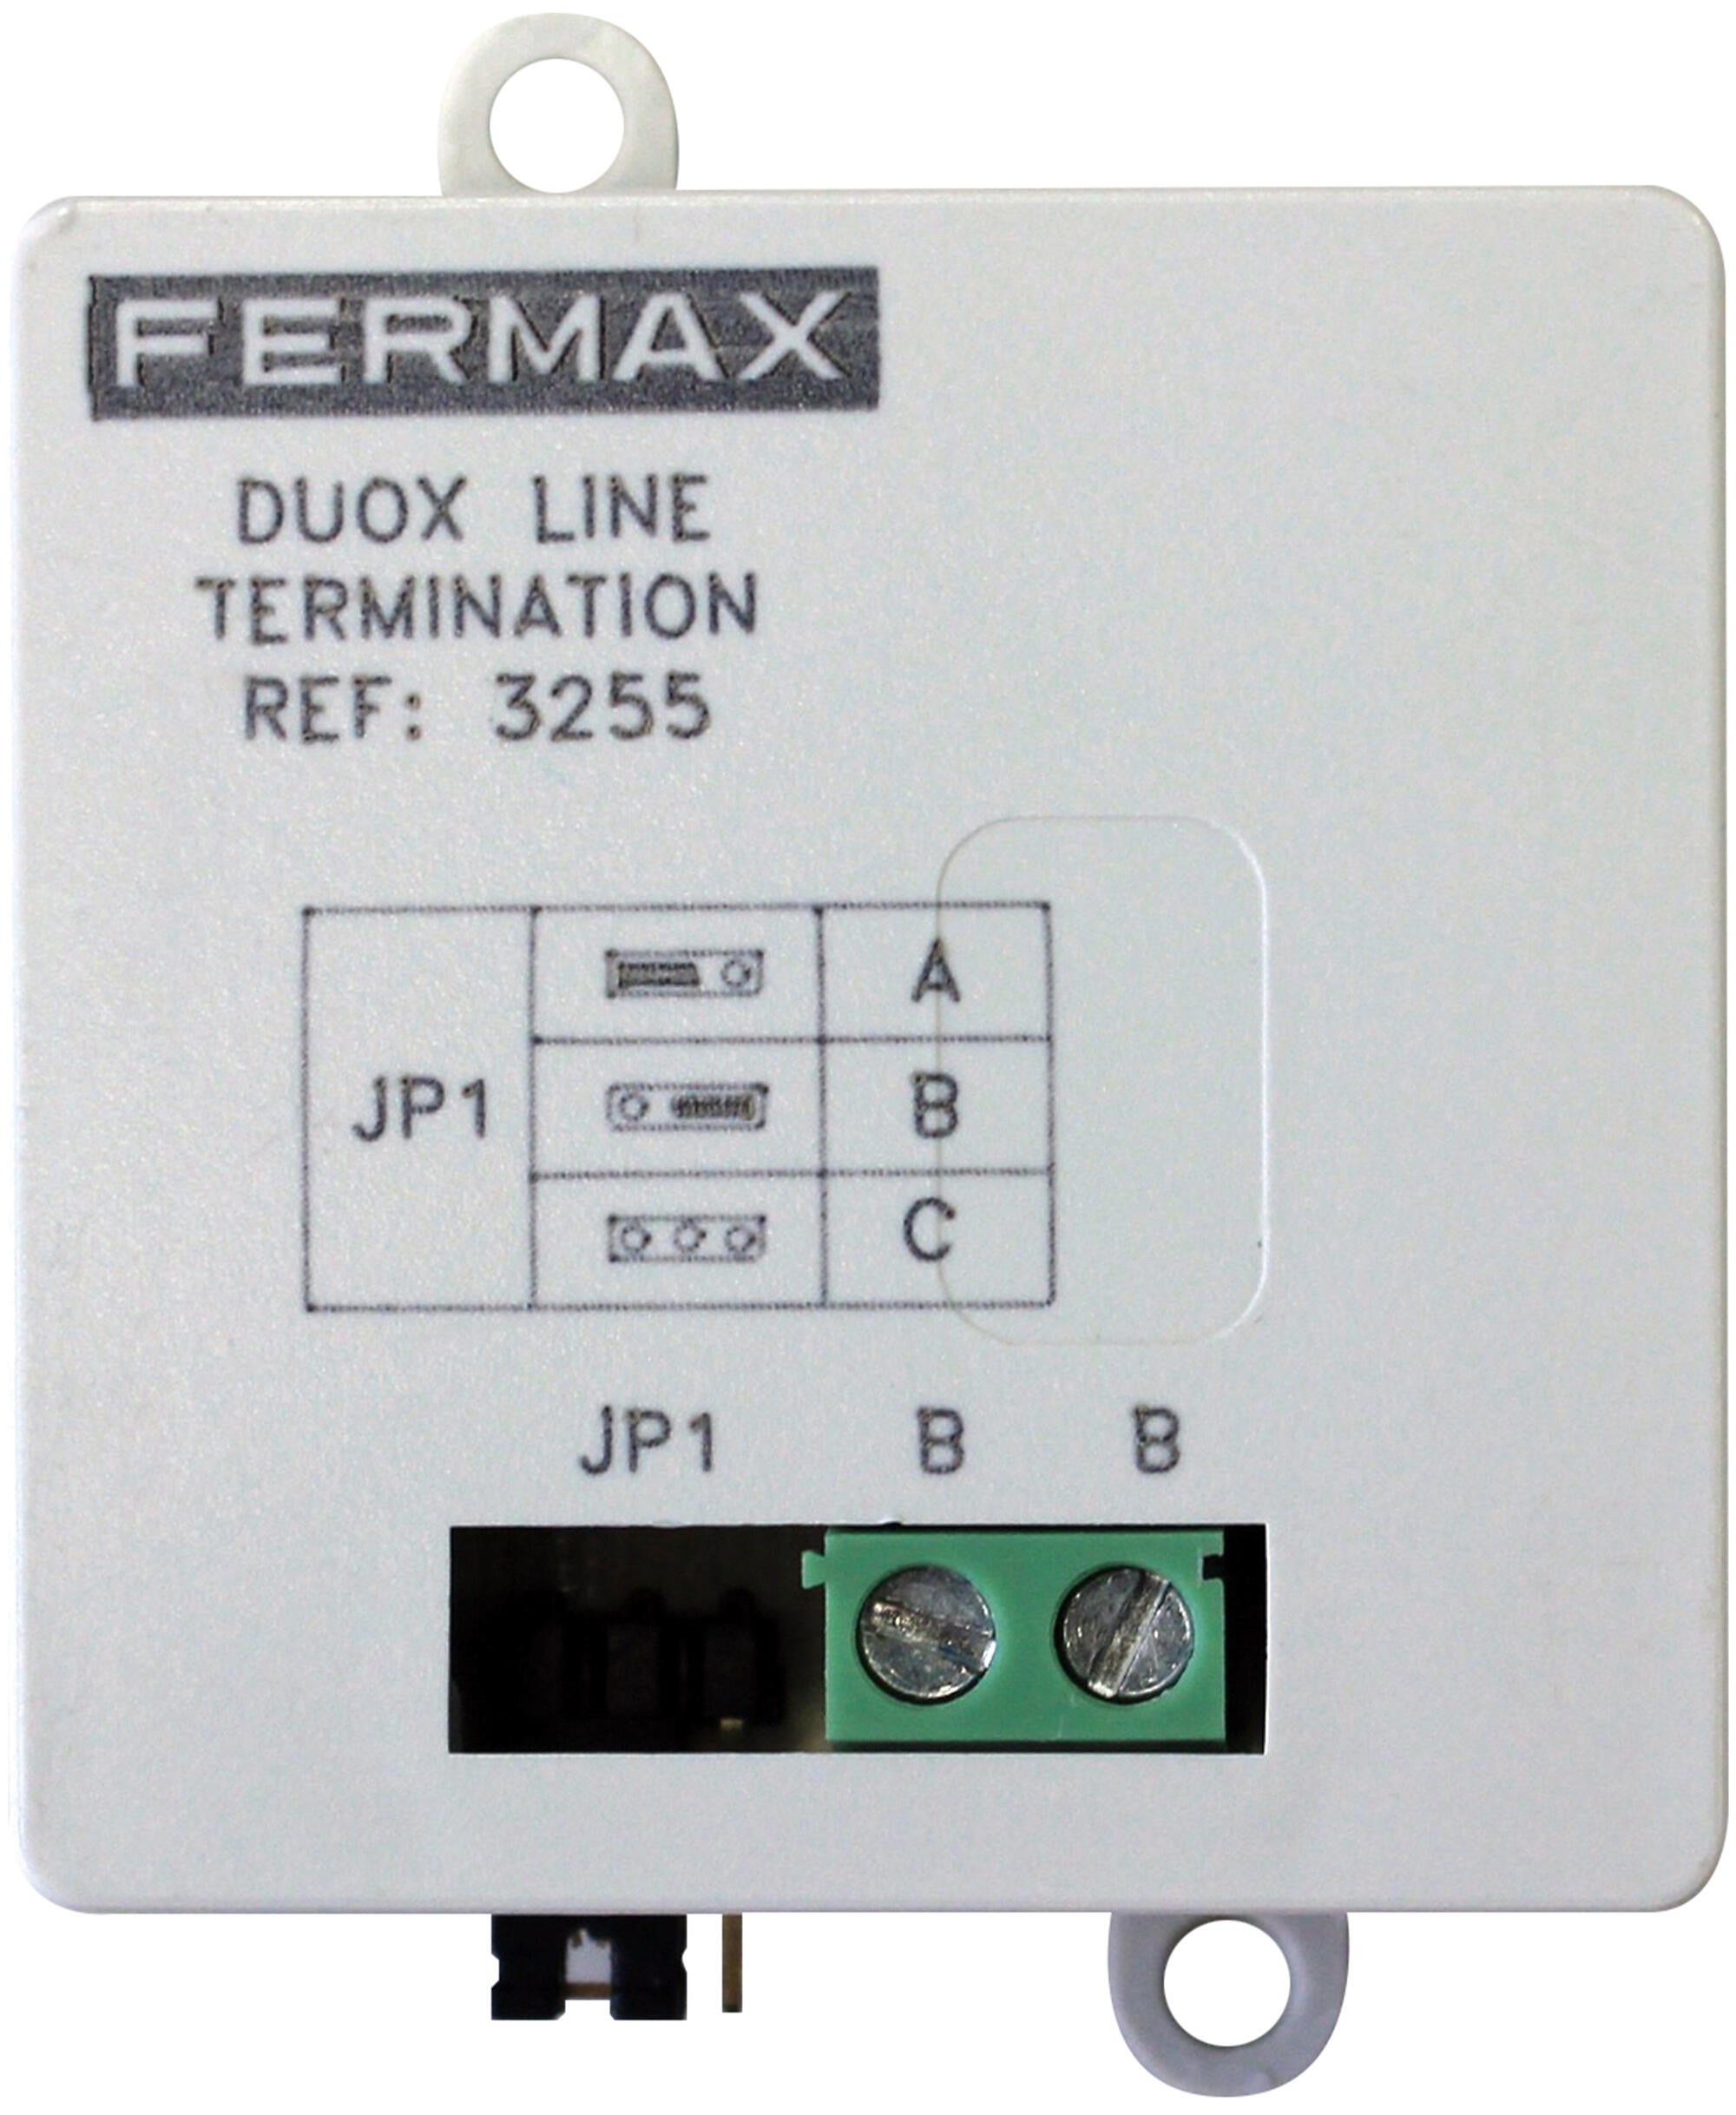 Adaptador de línea duox plus fermax 3255